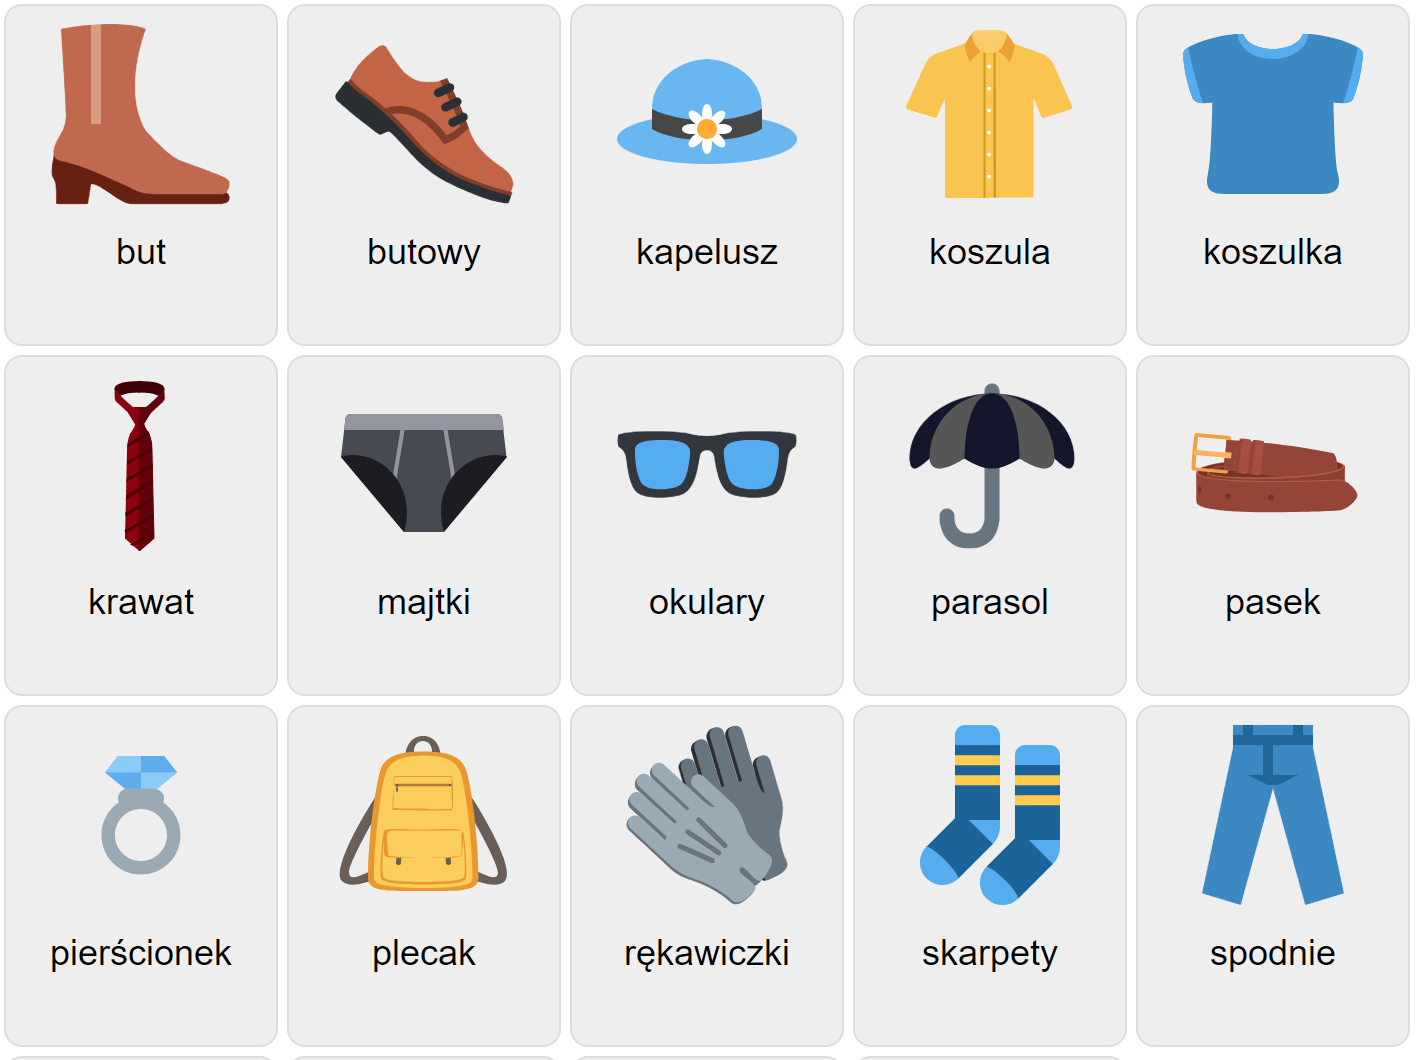 Одежда на польском языке